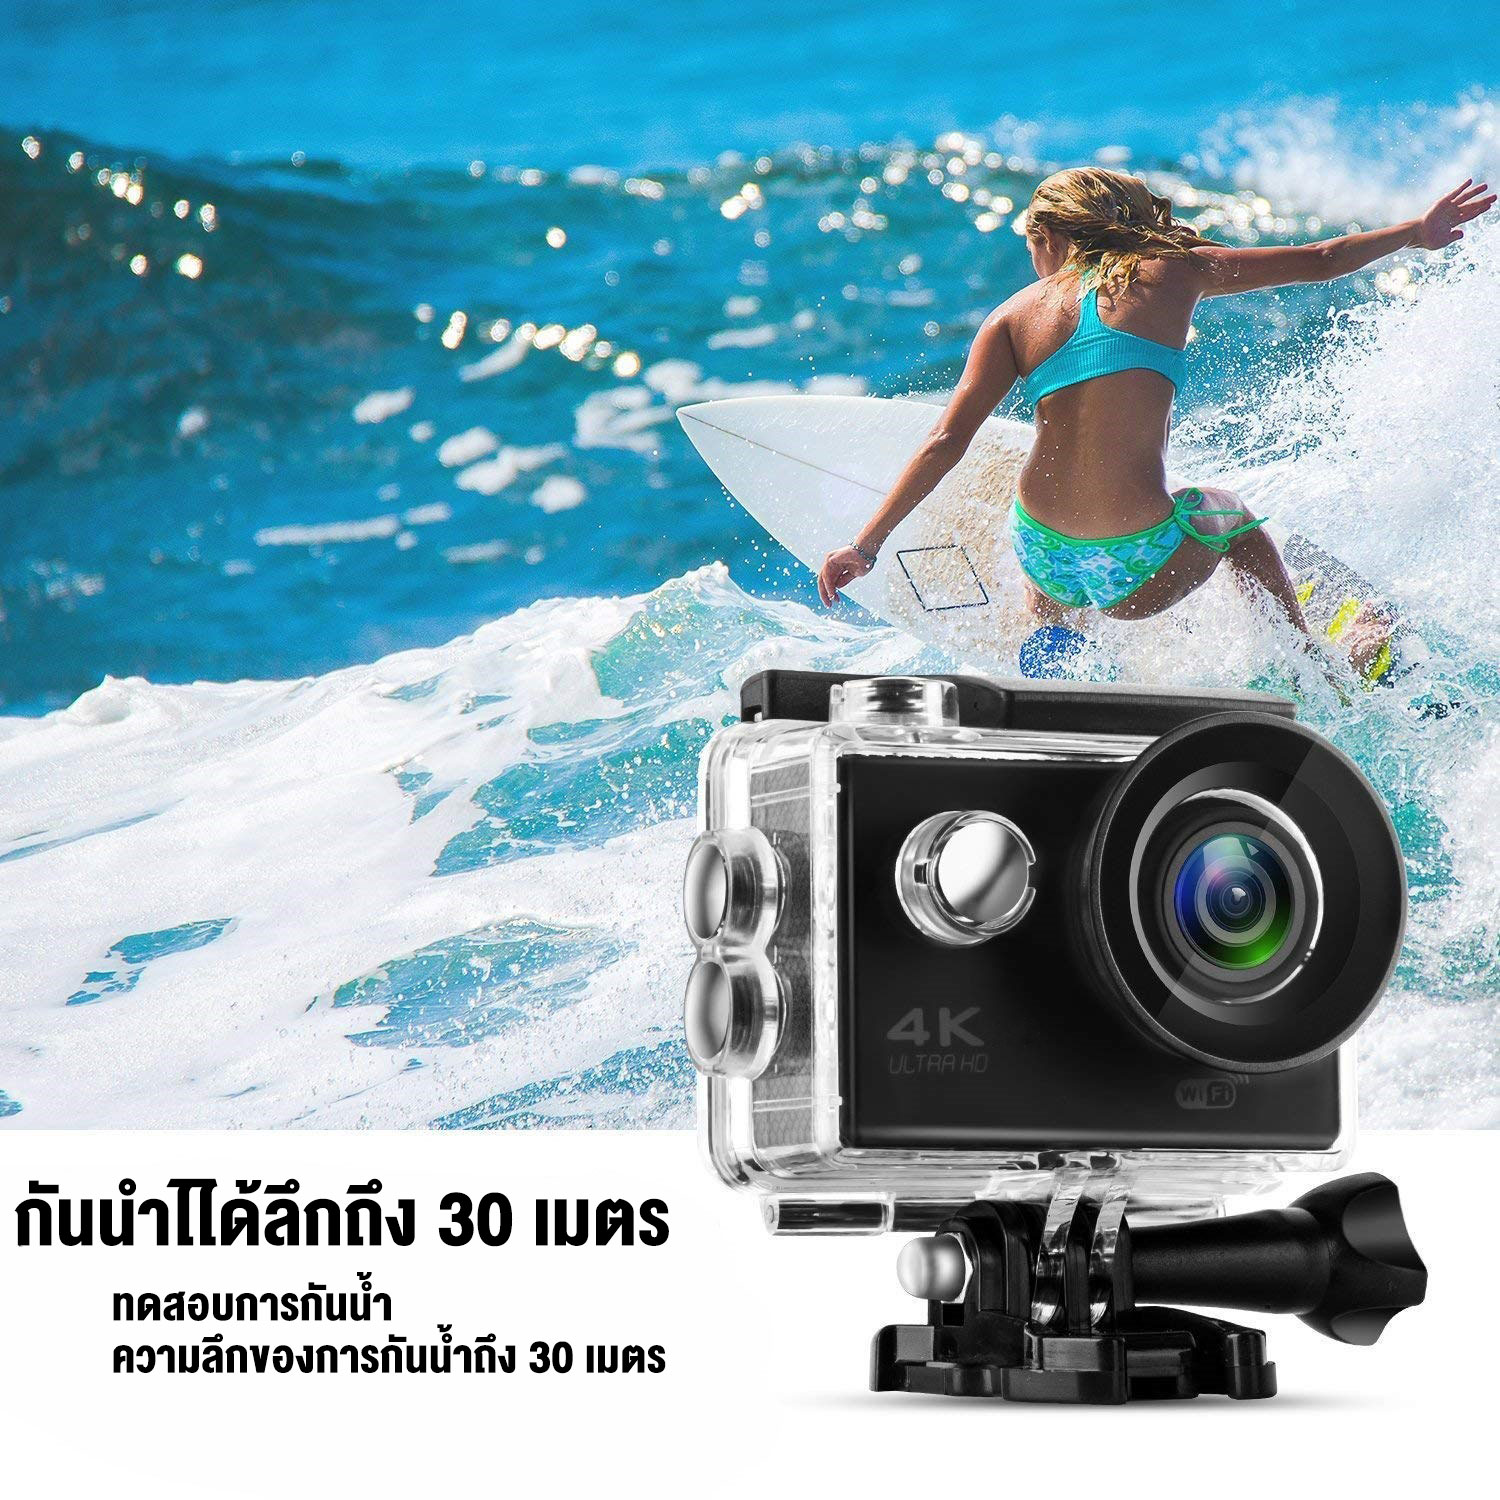 รายละเอียดเพิ่มเติมเกี่ยวกับ กล้องโกโปร Camera Sport HD Full HD 1080P กล้องโกโปร GoPro กล้องกันน้ำ กล้องติดหมวก กล้องรถแข่ง กล้องถ่ายรูป กล้องบันทึกภาพ กล้องถ่ายภาพ